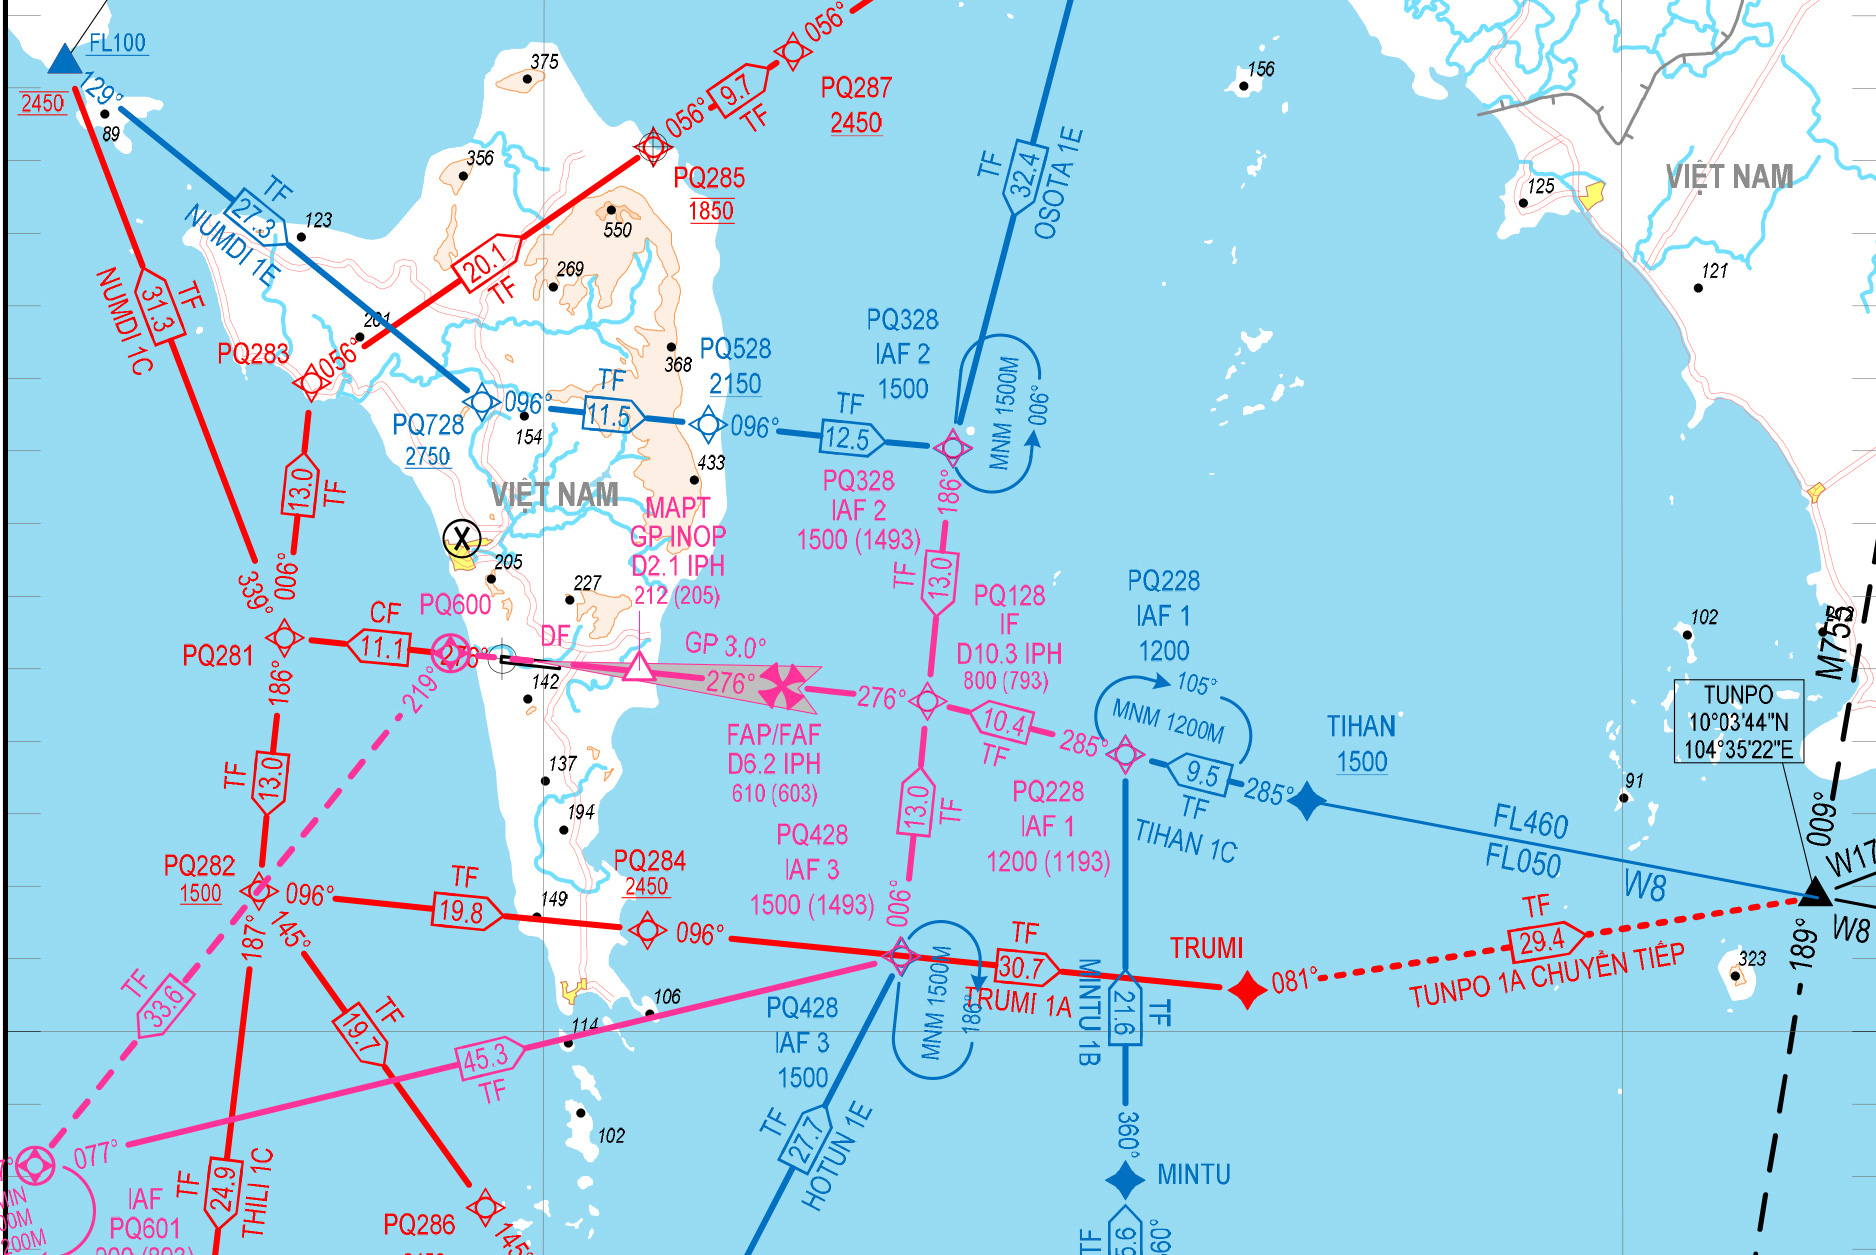 Bay tiên tiến Phú Quốc: Với sự phát triển của bay tiên tiến Phú Quốc, việc di chuyển đến nơi đây trở nên bao giờ cũng tiện lợi và nhanh chóng. Với những chuyến bay thẳng từ các thành phố lớn, việc khám phá Phú Quốc cũng trở nên dễ dàng hơn bao giờ hết.